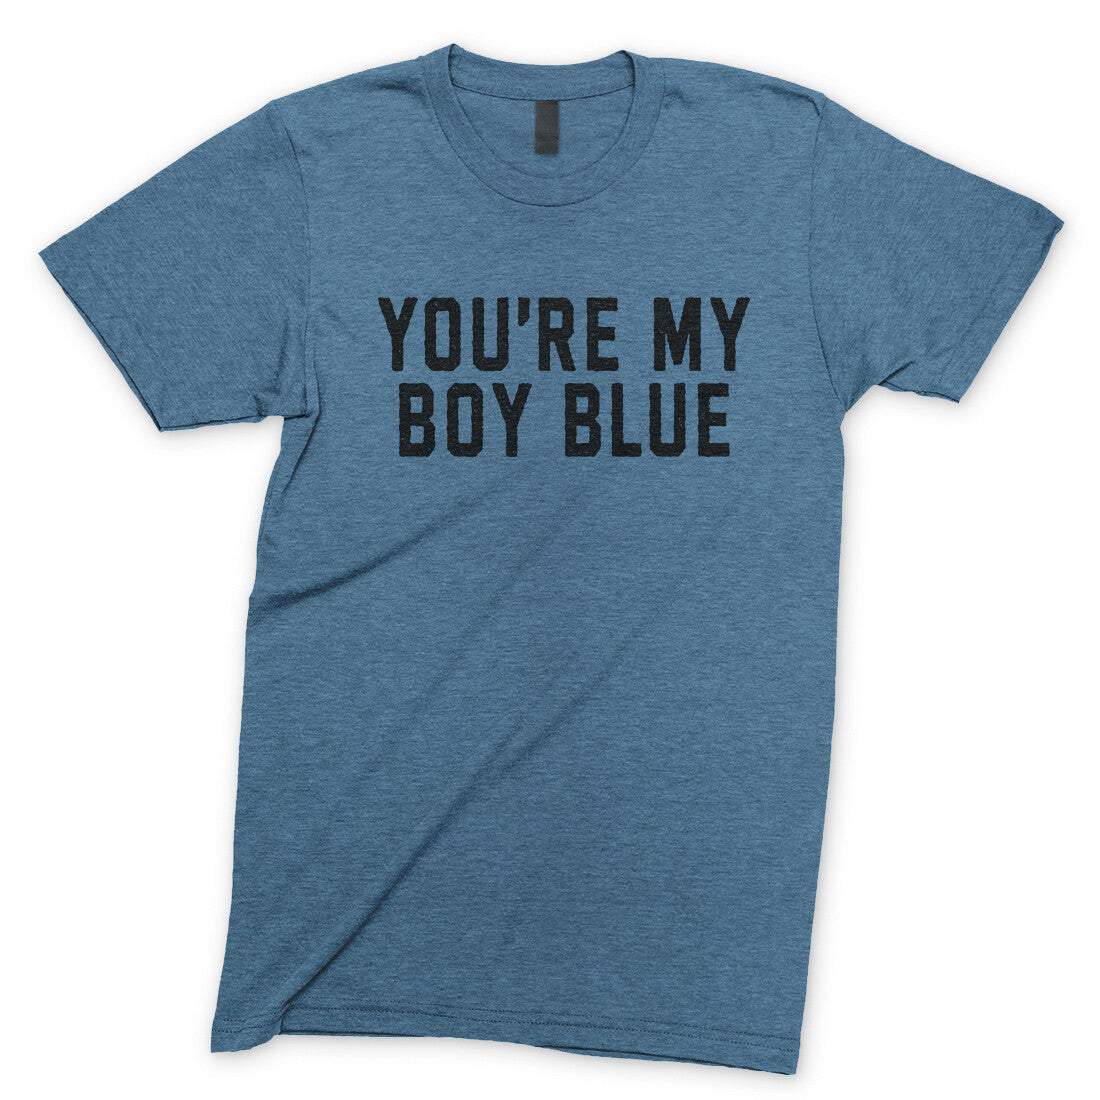 You're my Boy Blue in Heather Indigo Color